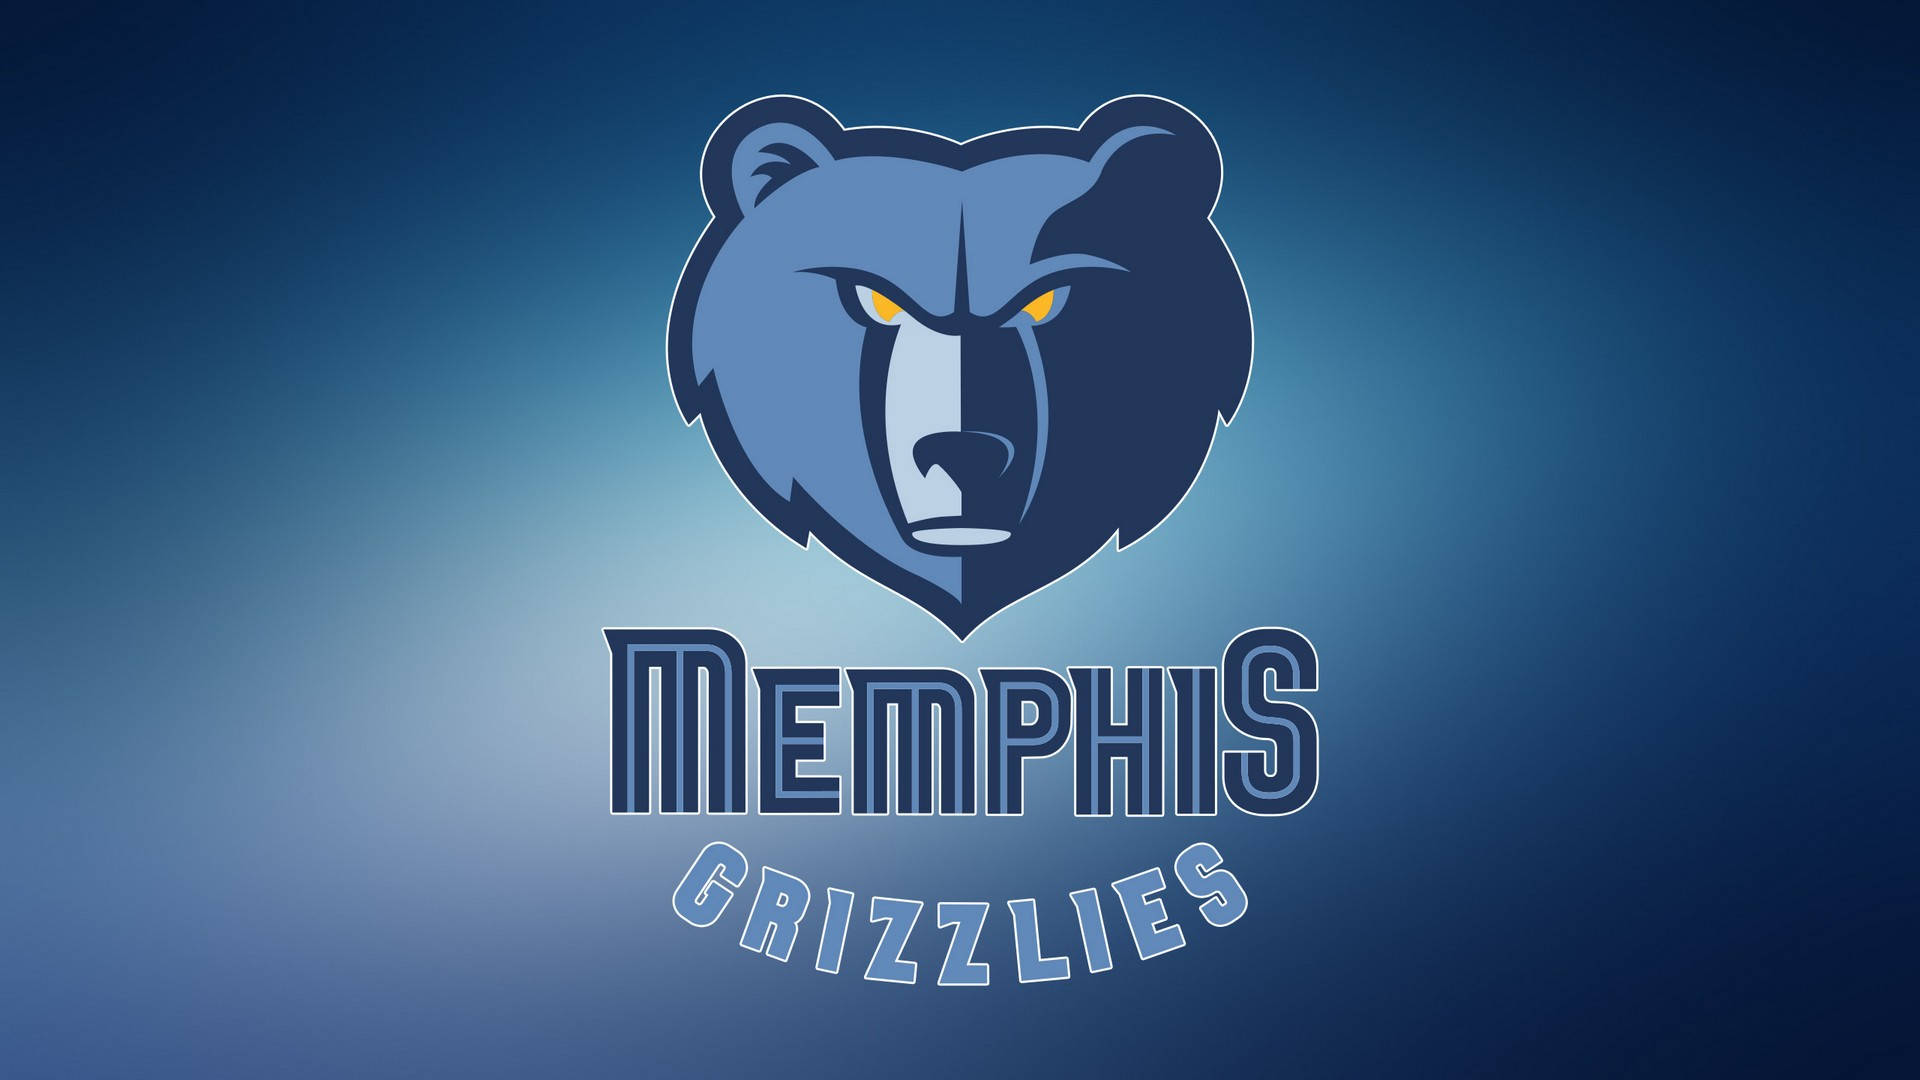 Best Memphis grizzlies iPhone HD Wallpapers  iLikeWallpaper